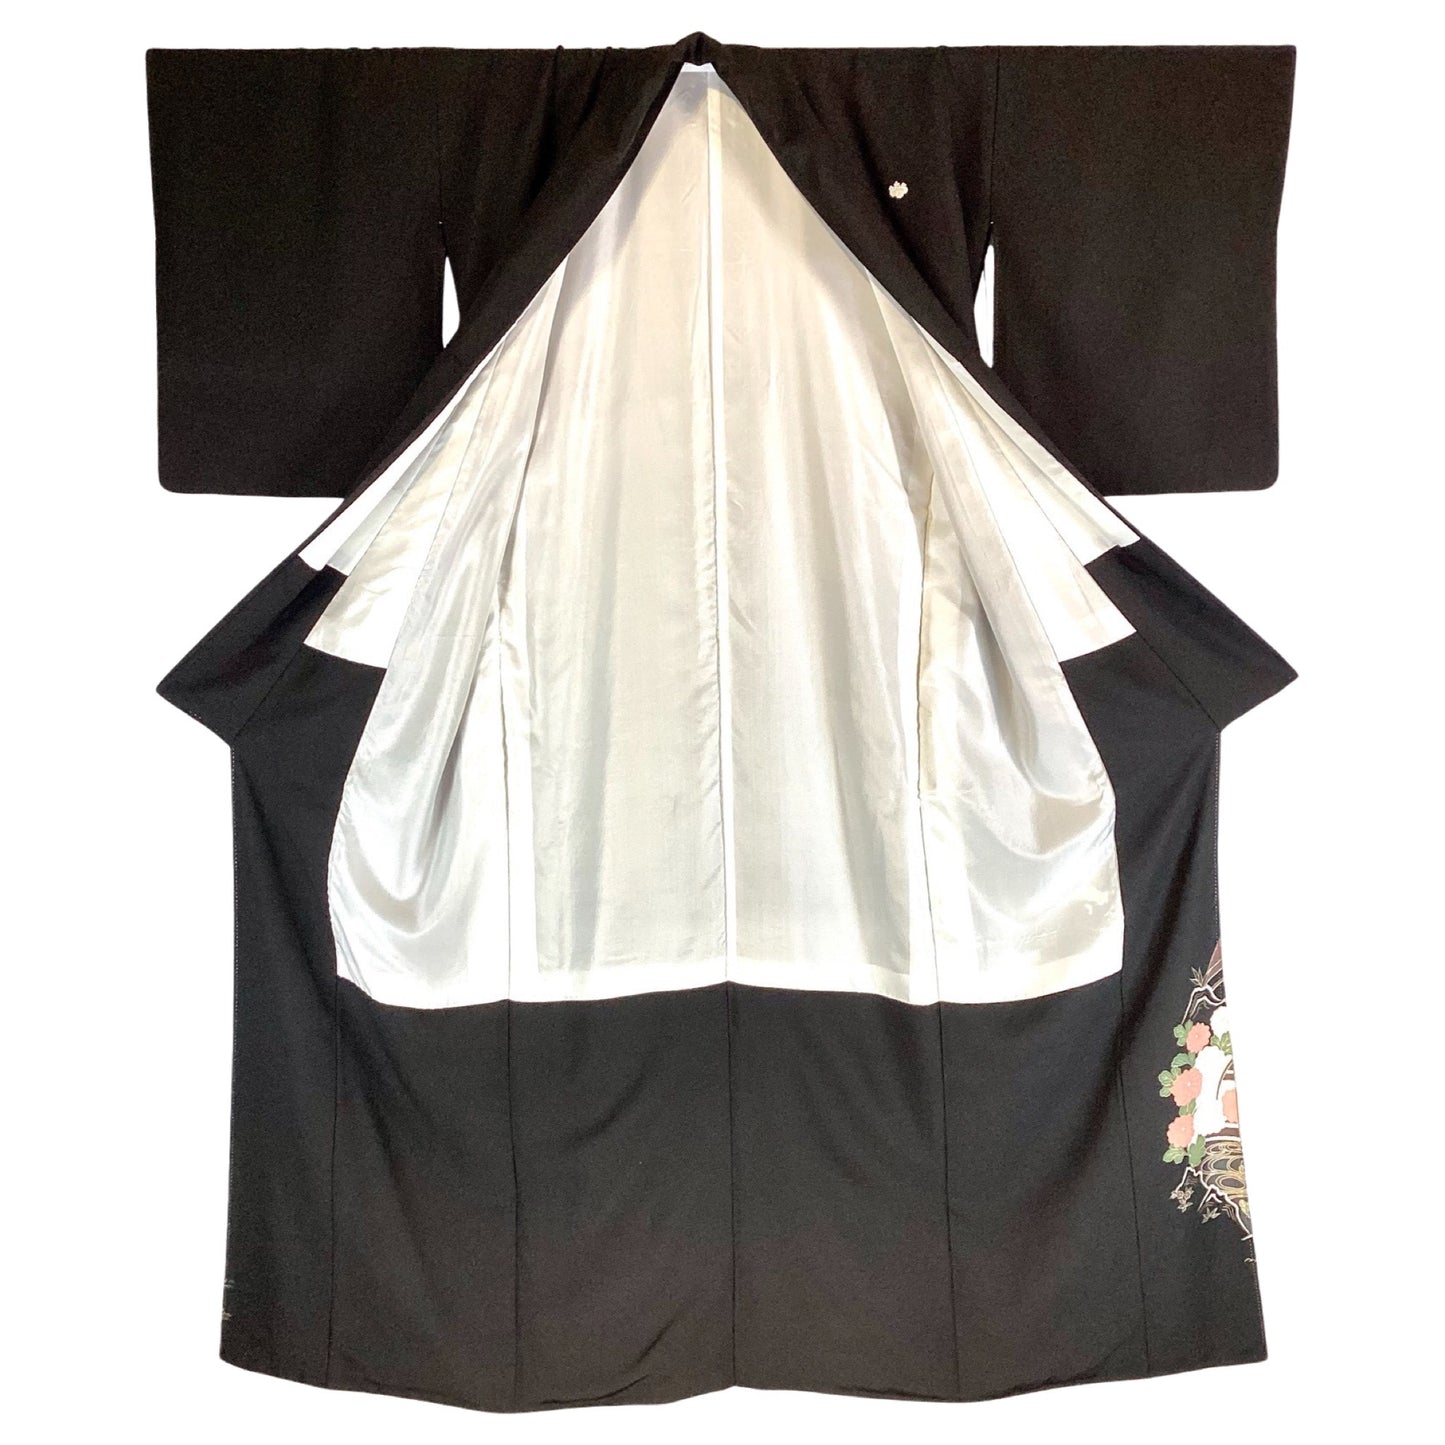 Vintage Kimono Tomesode Cranes